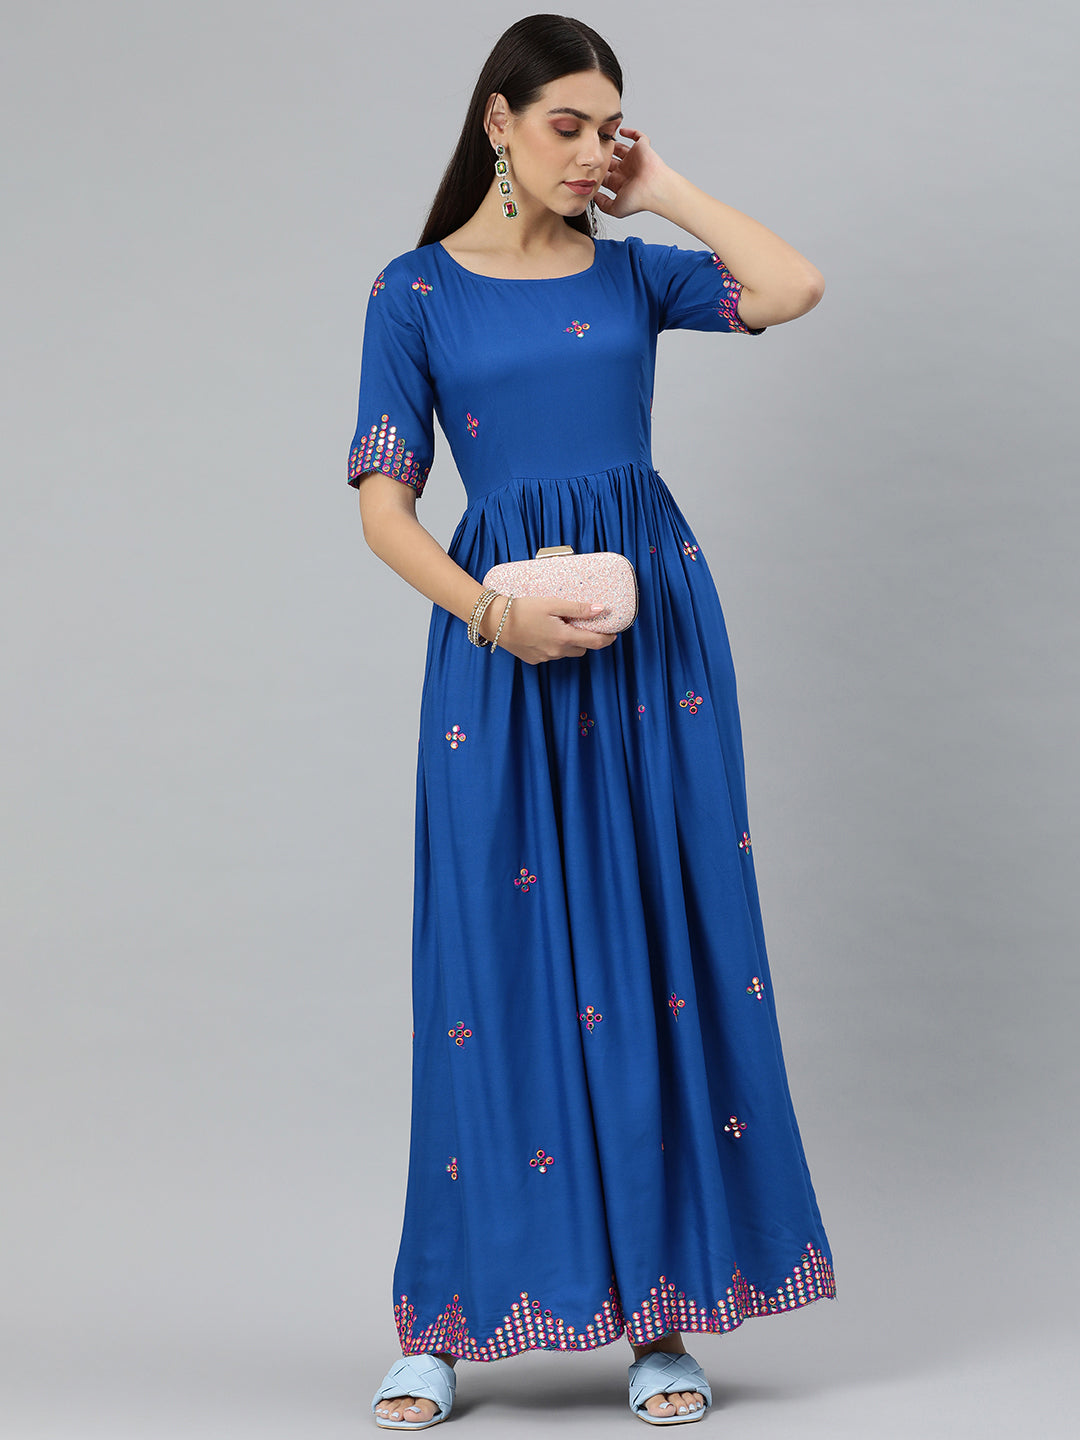 Royal Blue Color Gown – Panache Haute Couture